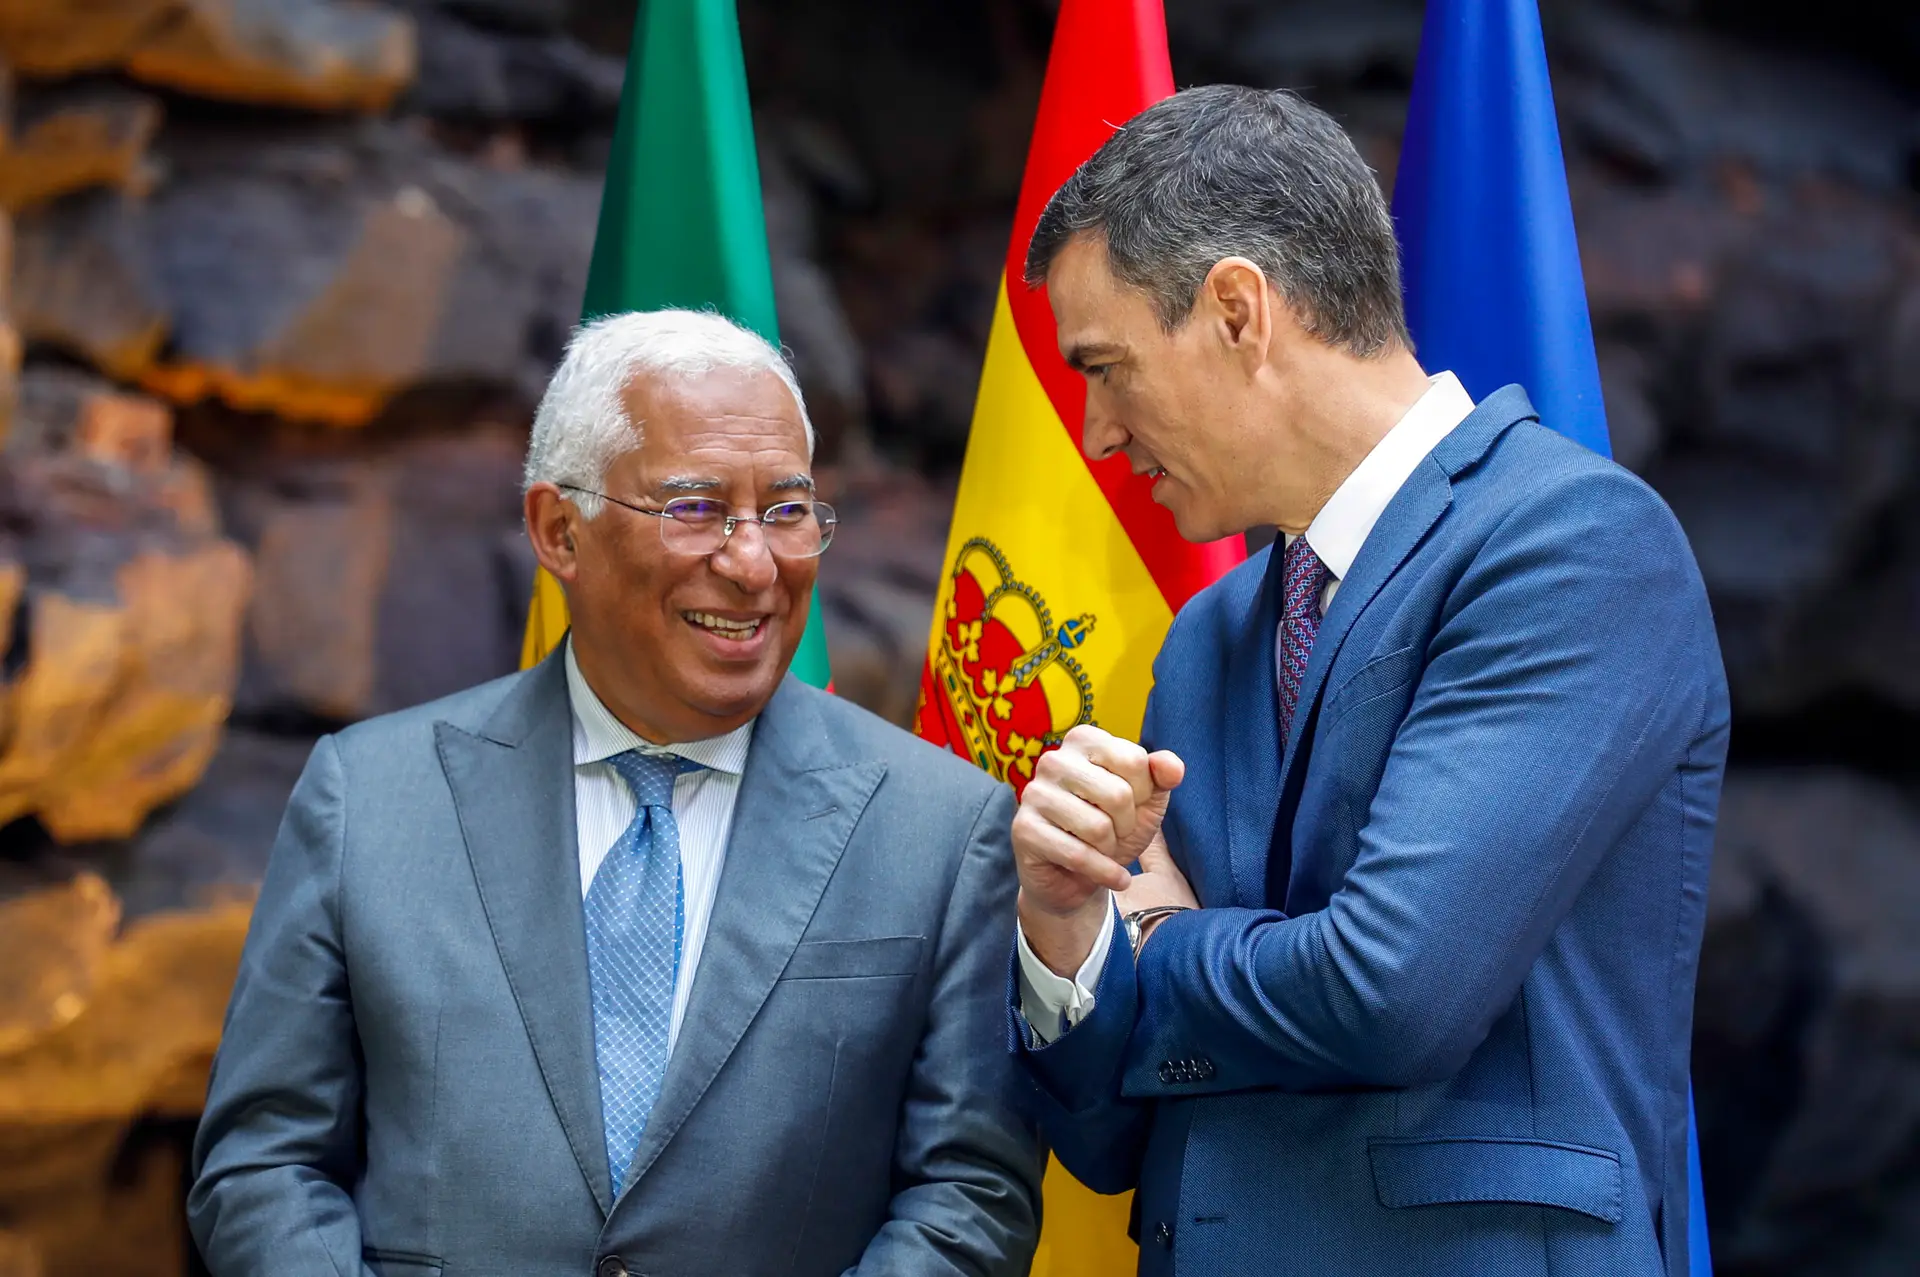 TAP: Sánchez evita falar sobre interesse da Iberia, mas apoia "estreitar laços"